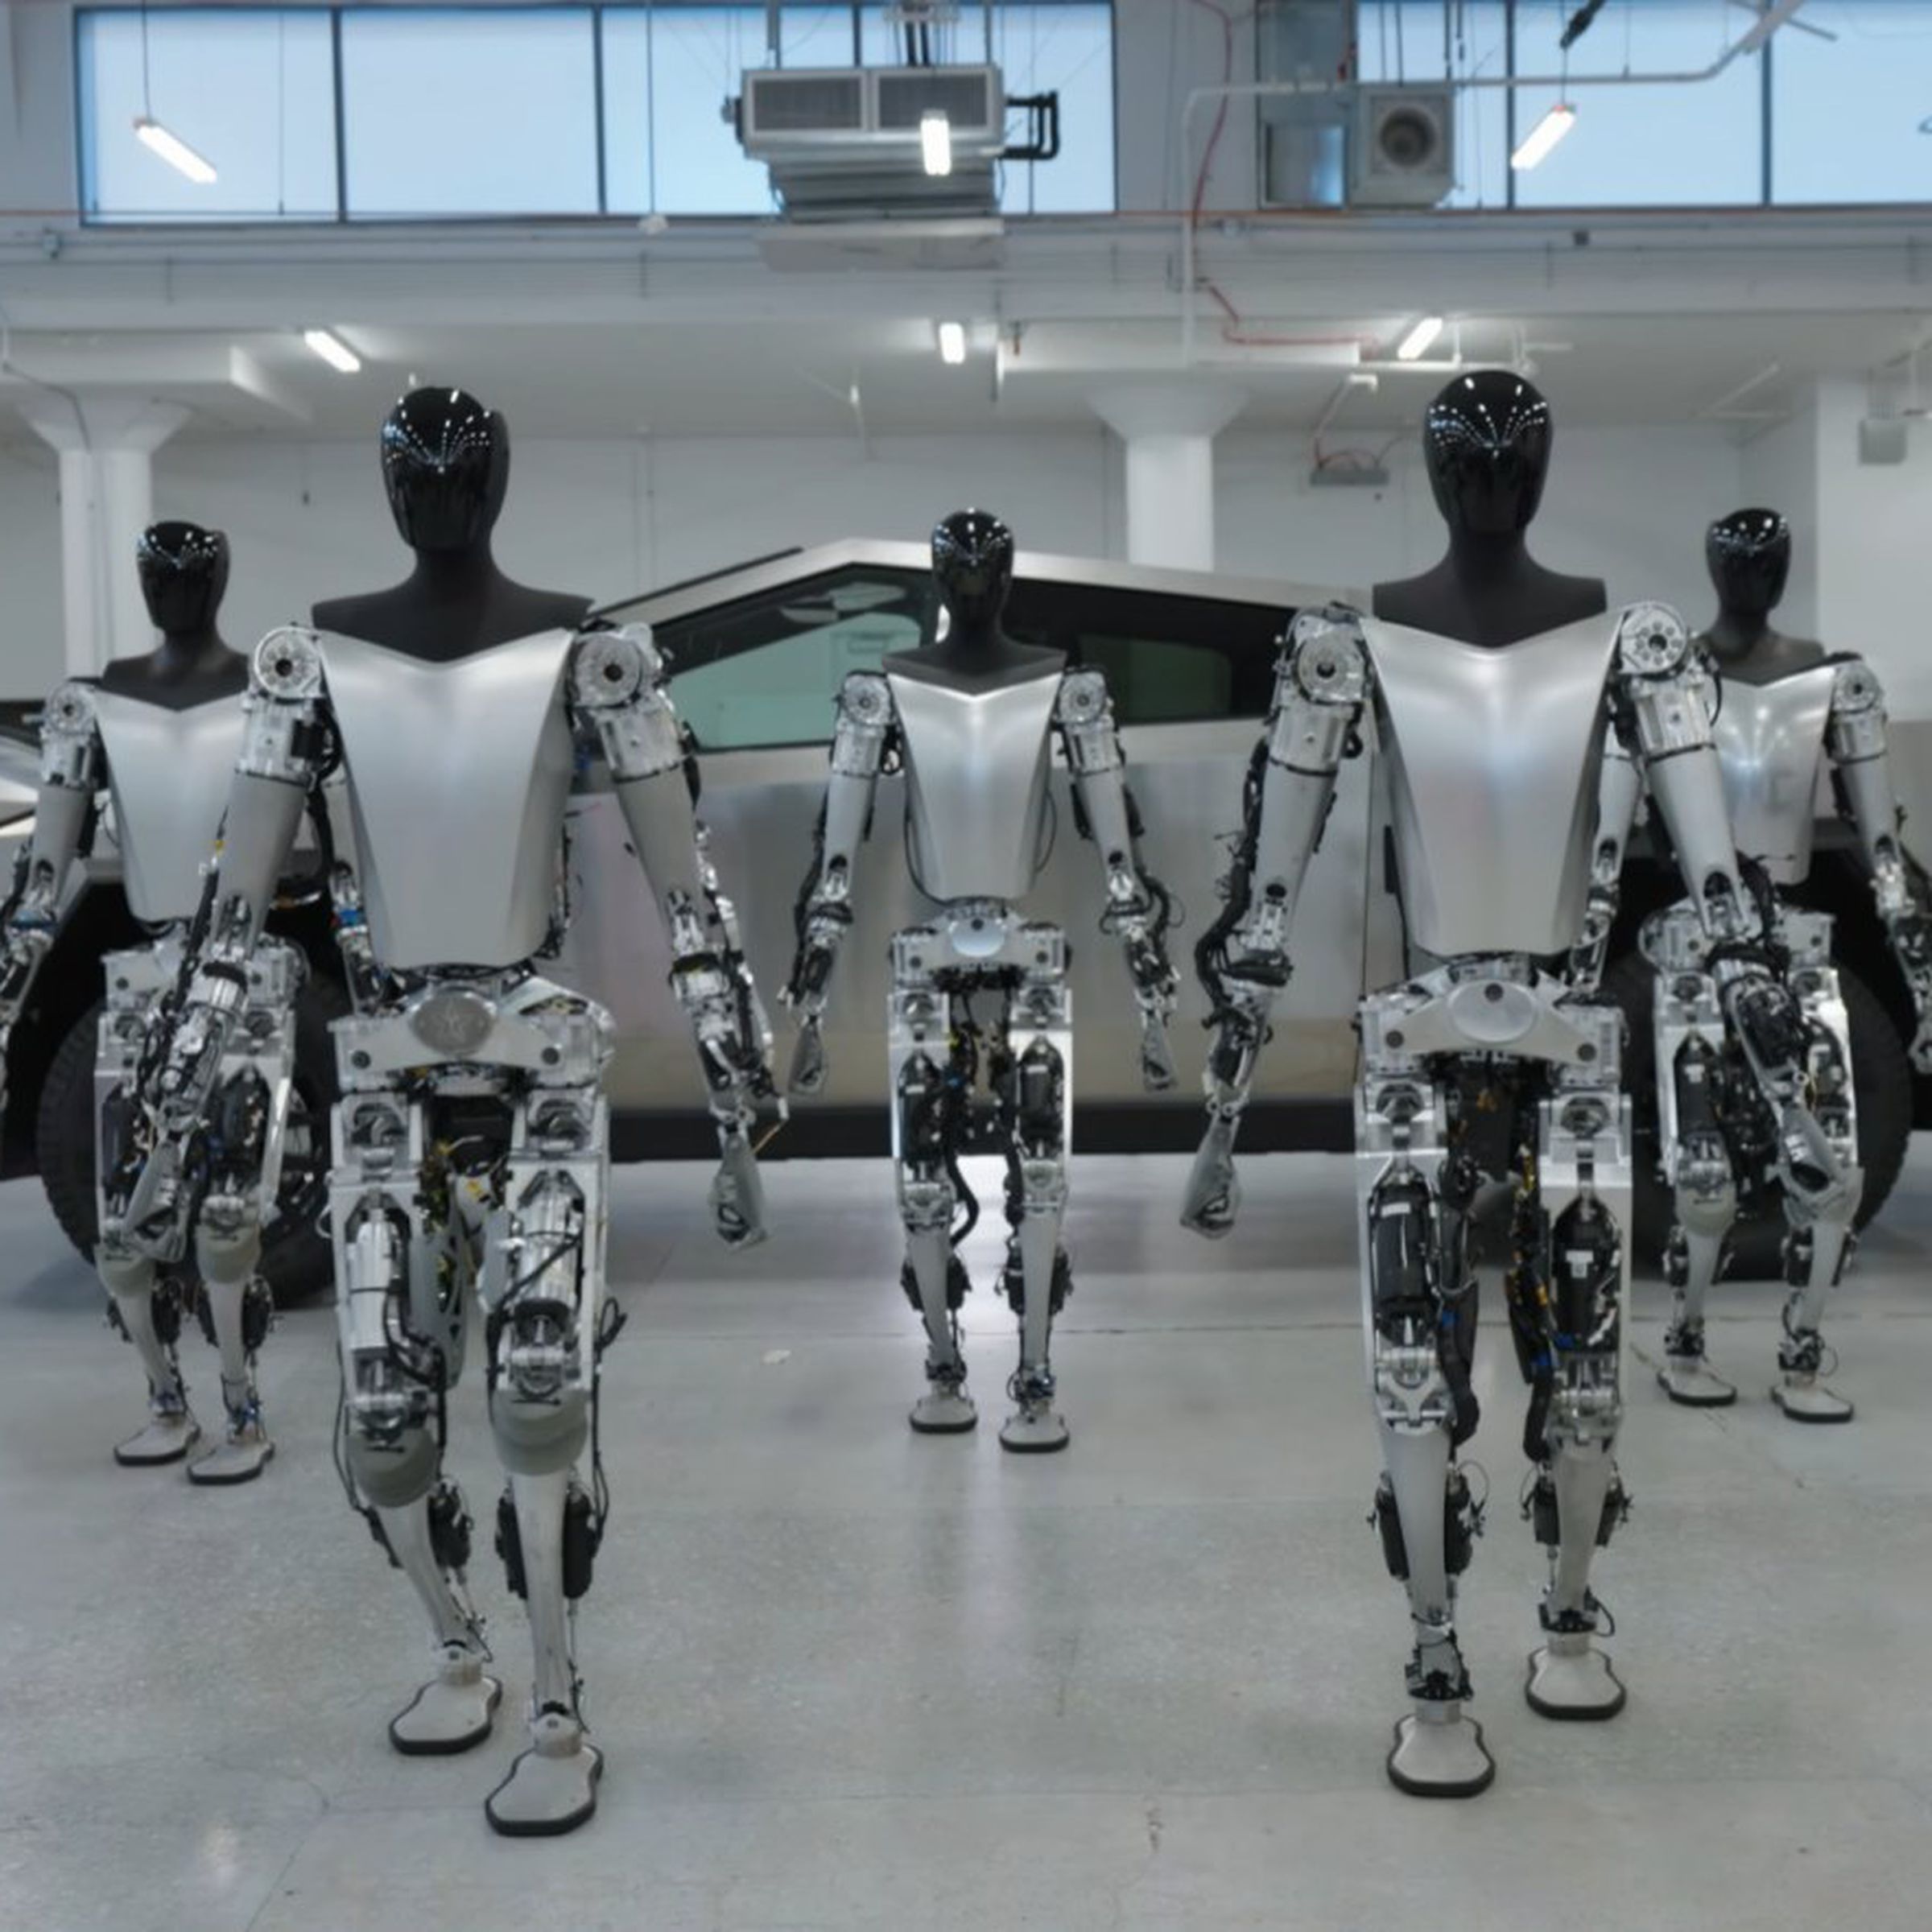 Tesla Bots shown walking in front of a Cybertruck